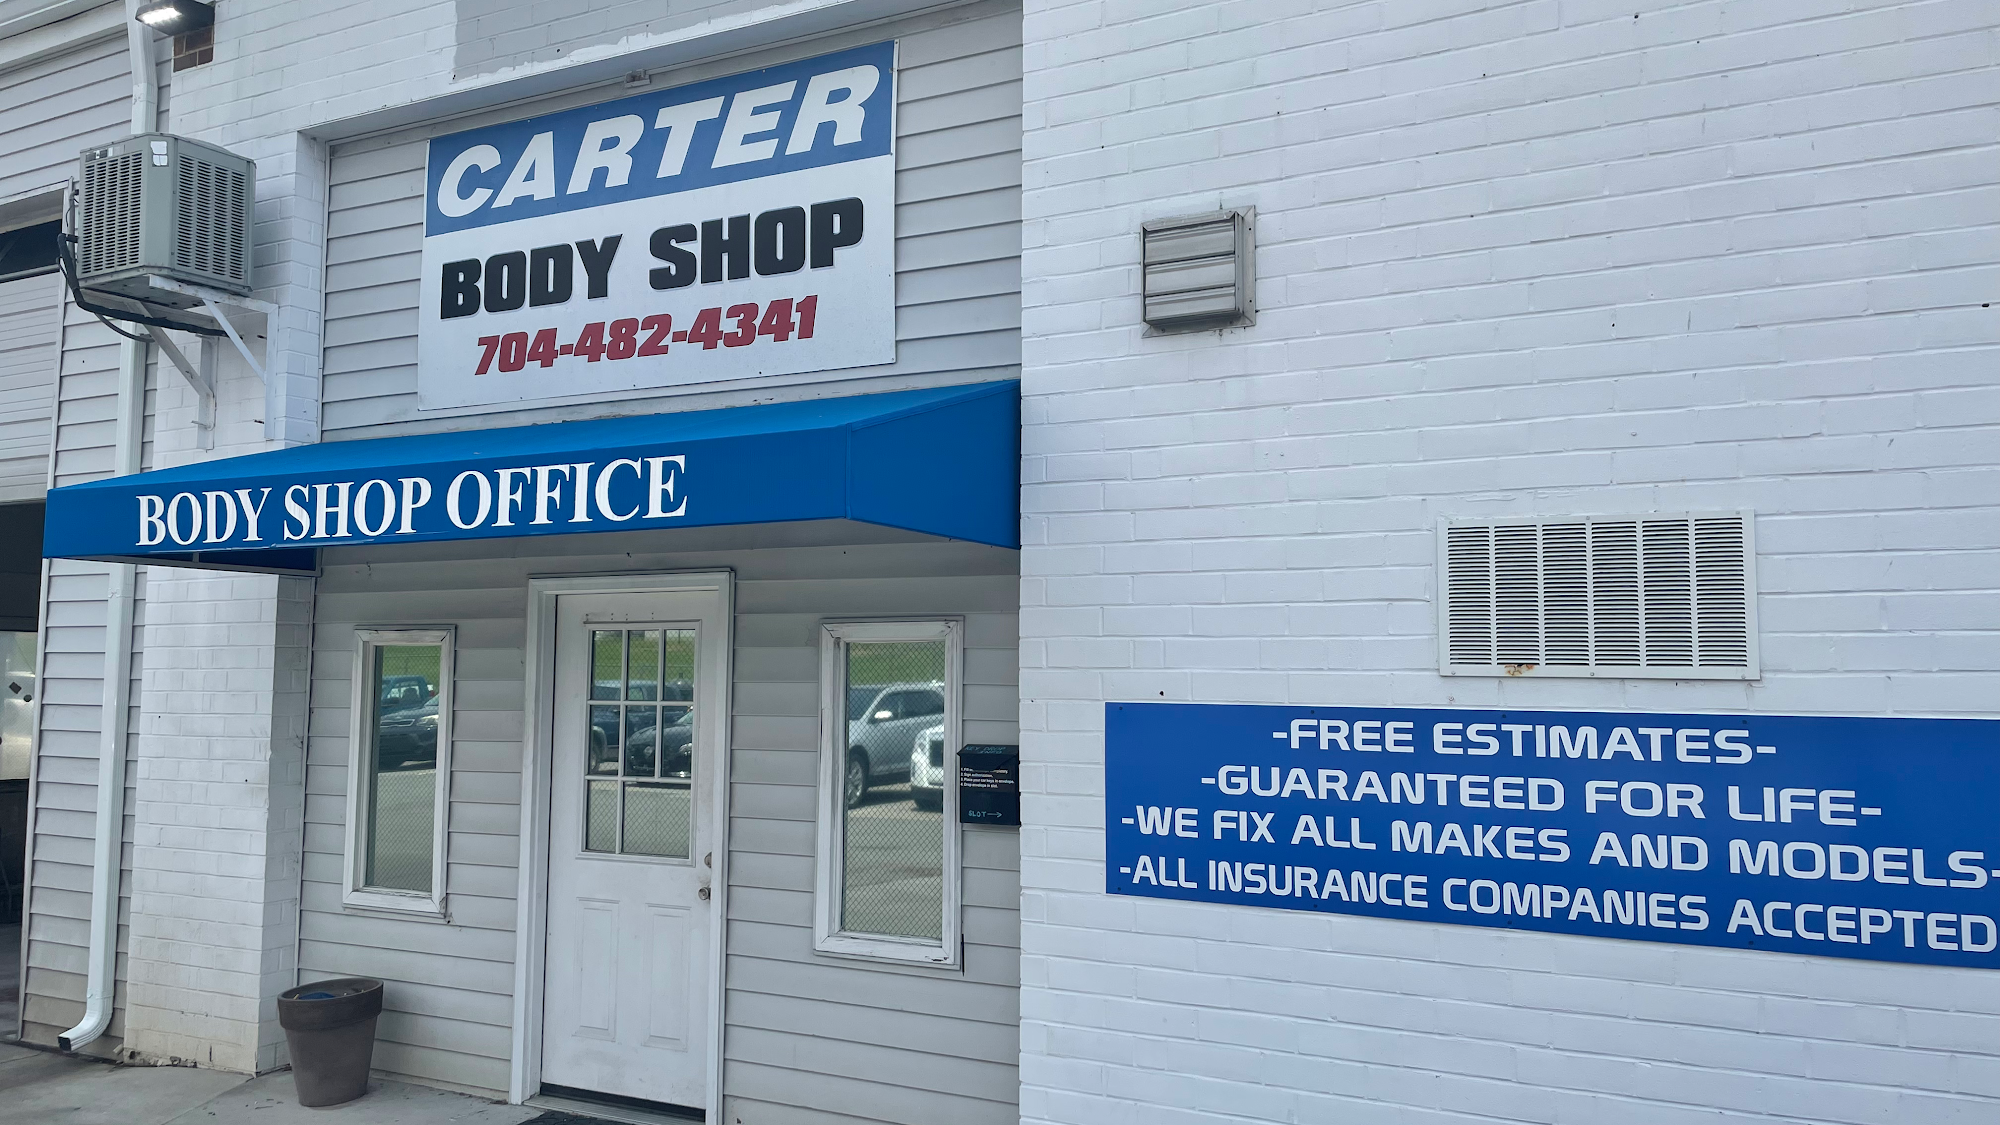 Carter Chevrolet Body Shop